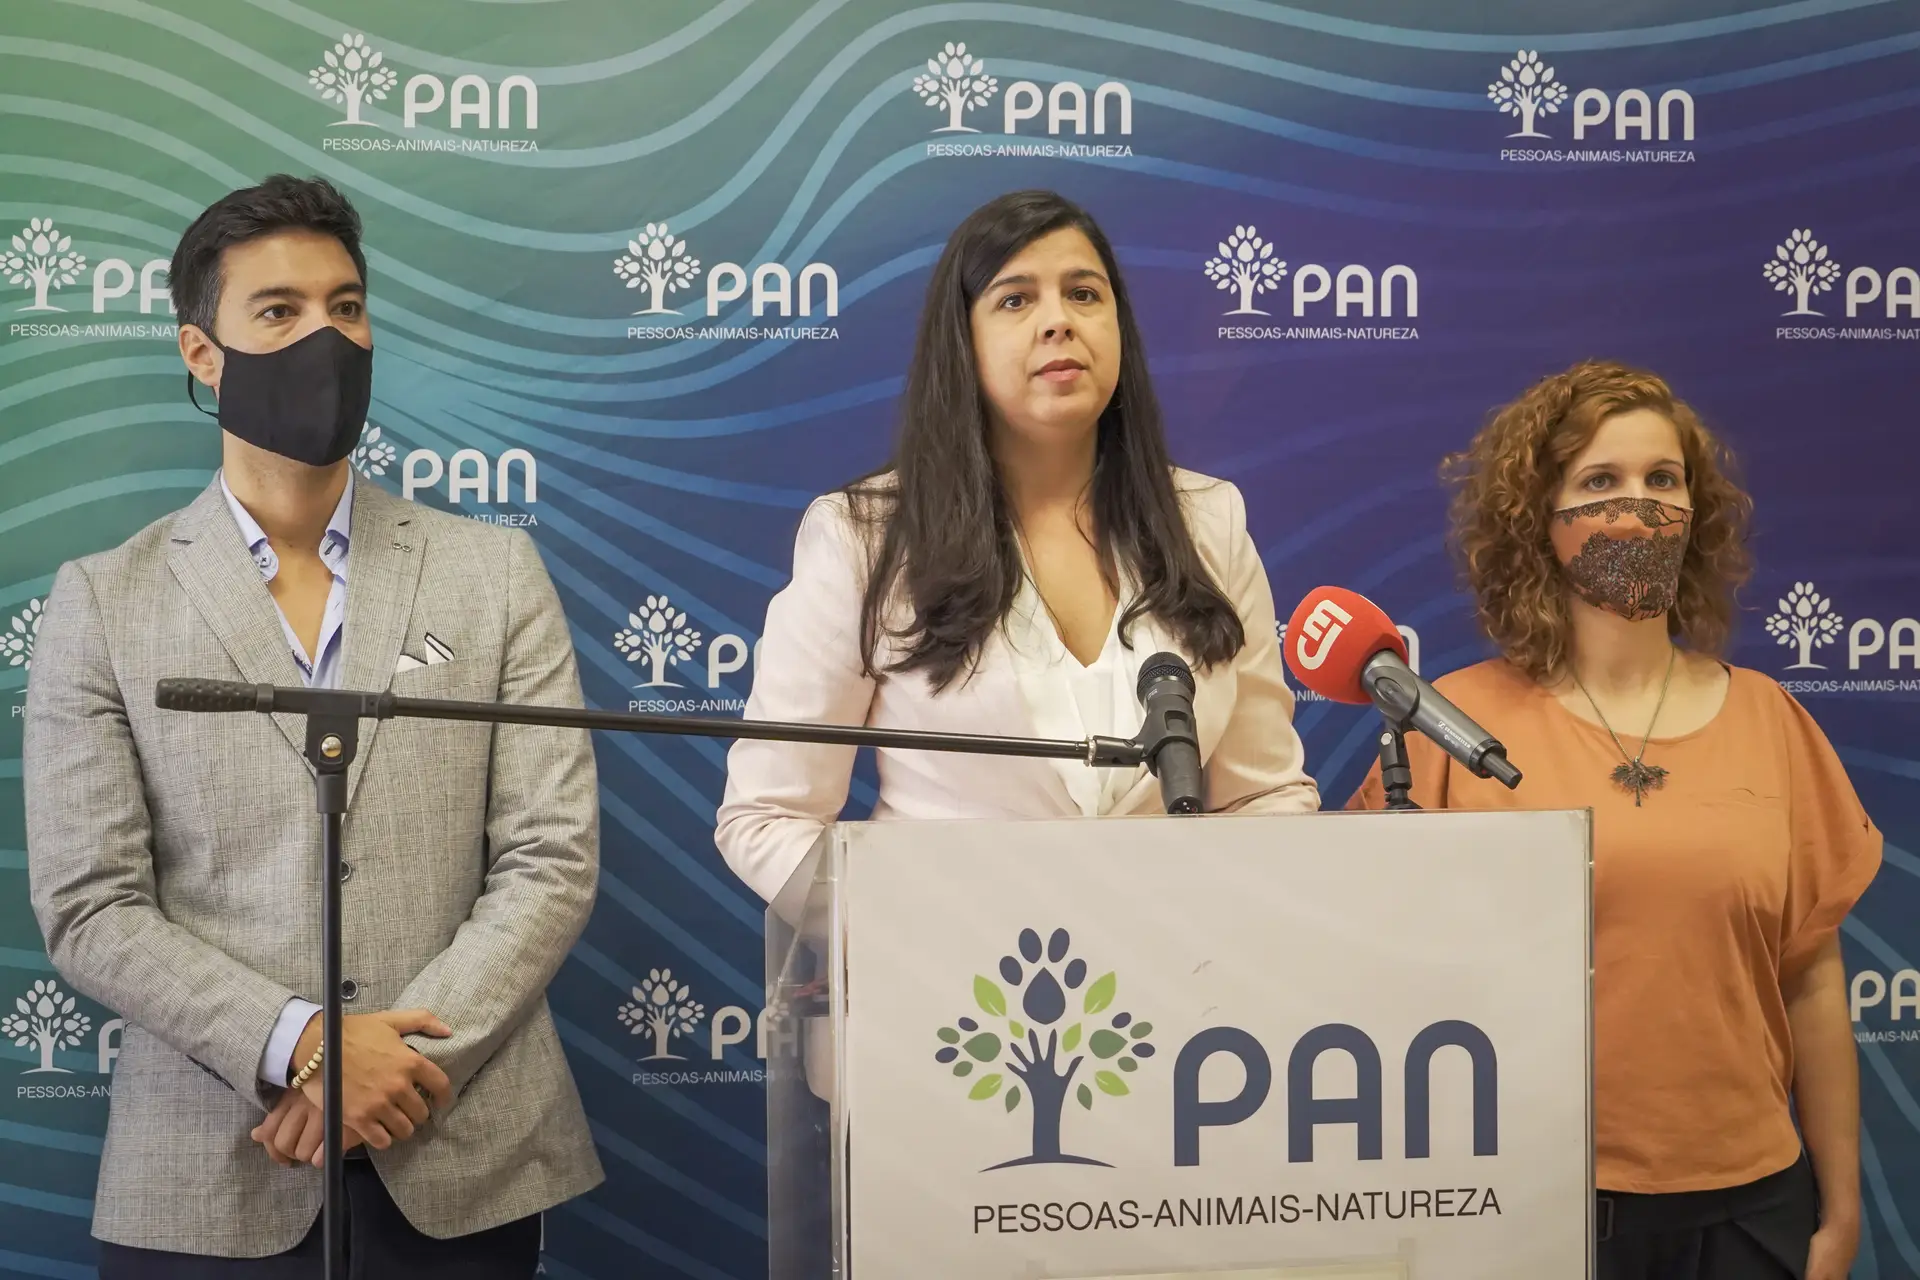 PAN diz que processo de nomeação de Ana Paula Vitorino está "ferido de conflito de interesses e opacidade"